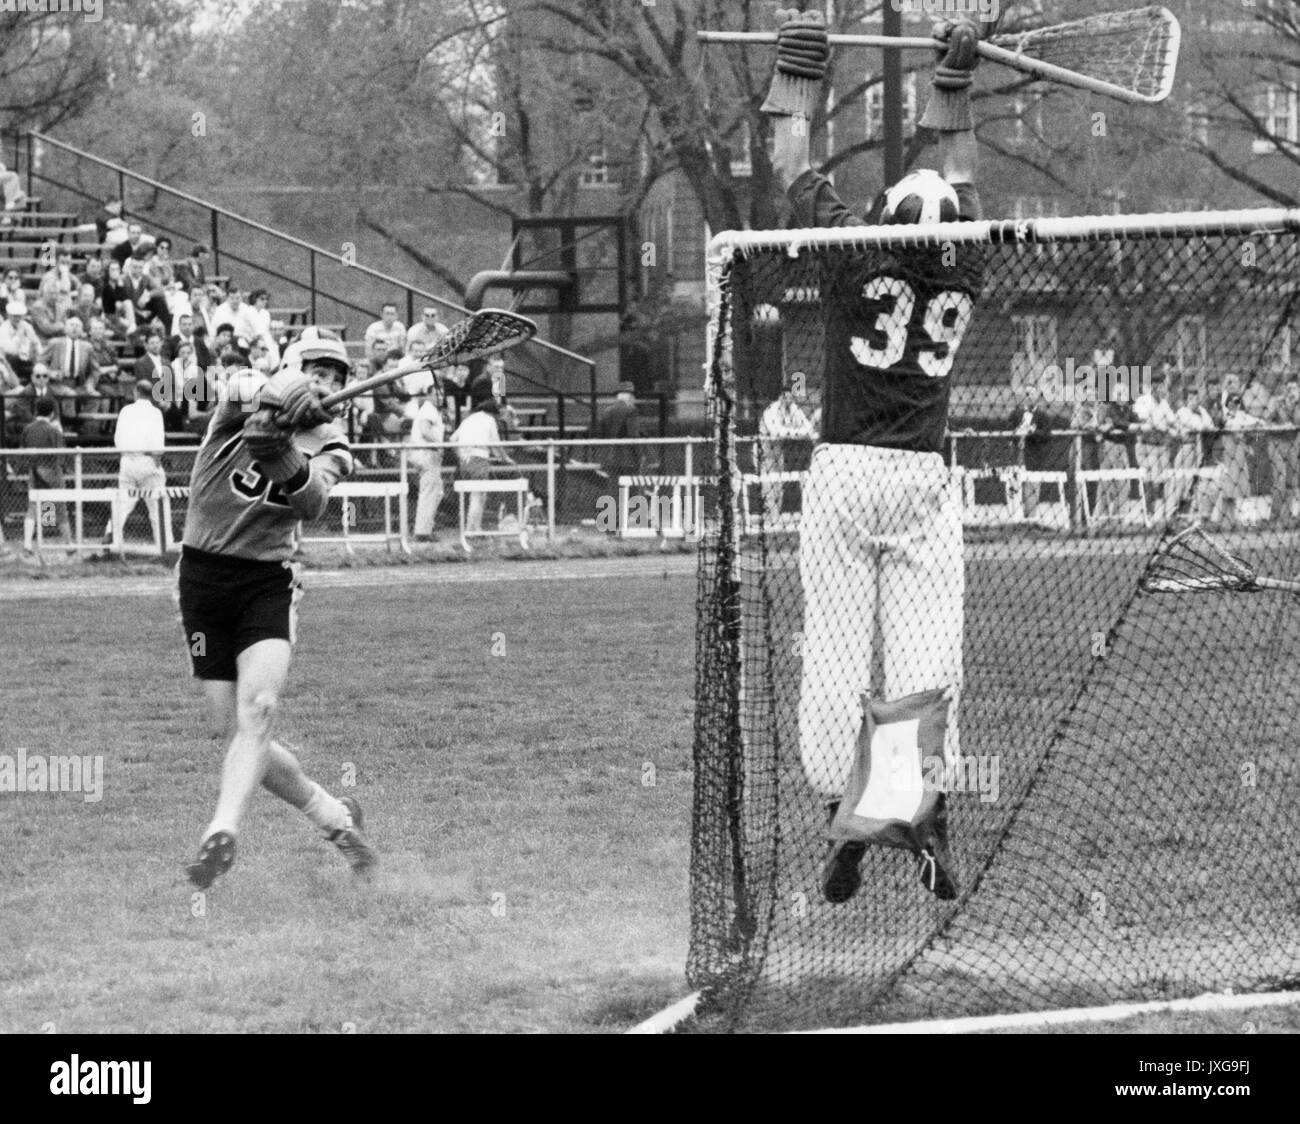 La crosse photo d'action prises au cours d'un match de crosse non identifiés de Homewood campus, un membre de l'équipe adverse s'efforce de rendre un but, alors que le gardien de but semble d'attraper la balle, 1950. Banque D'Images